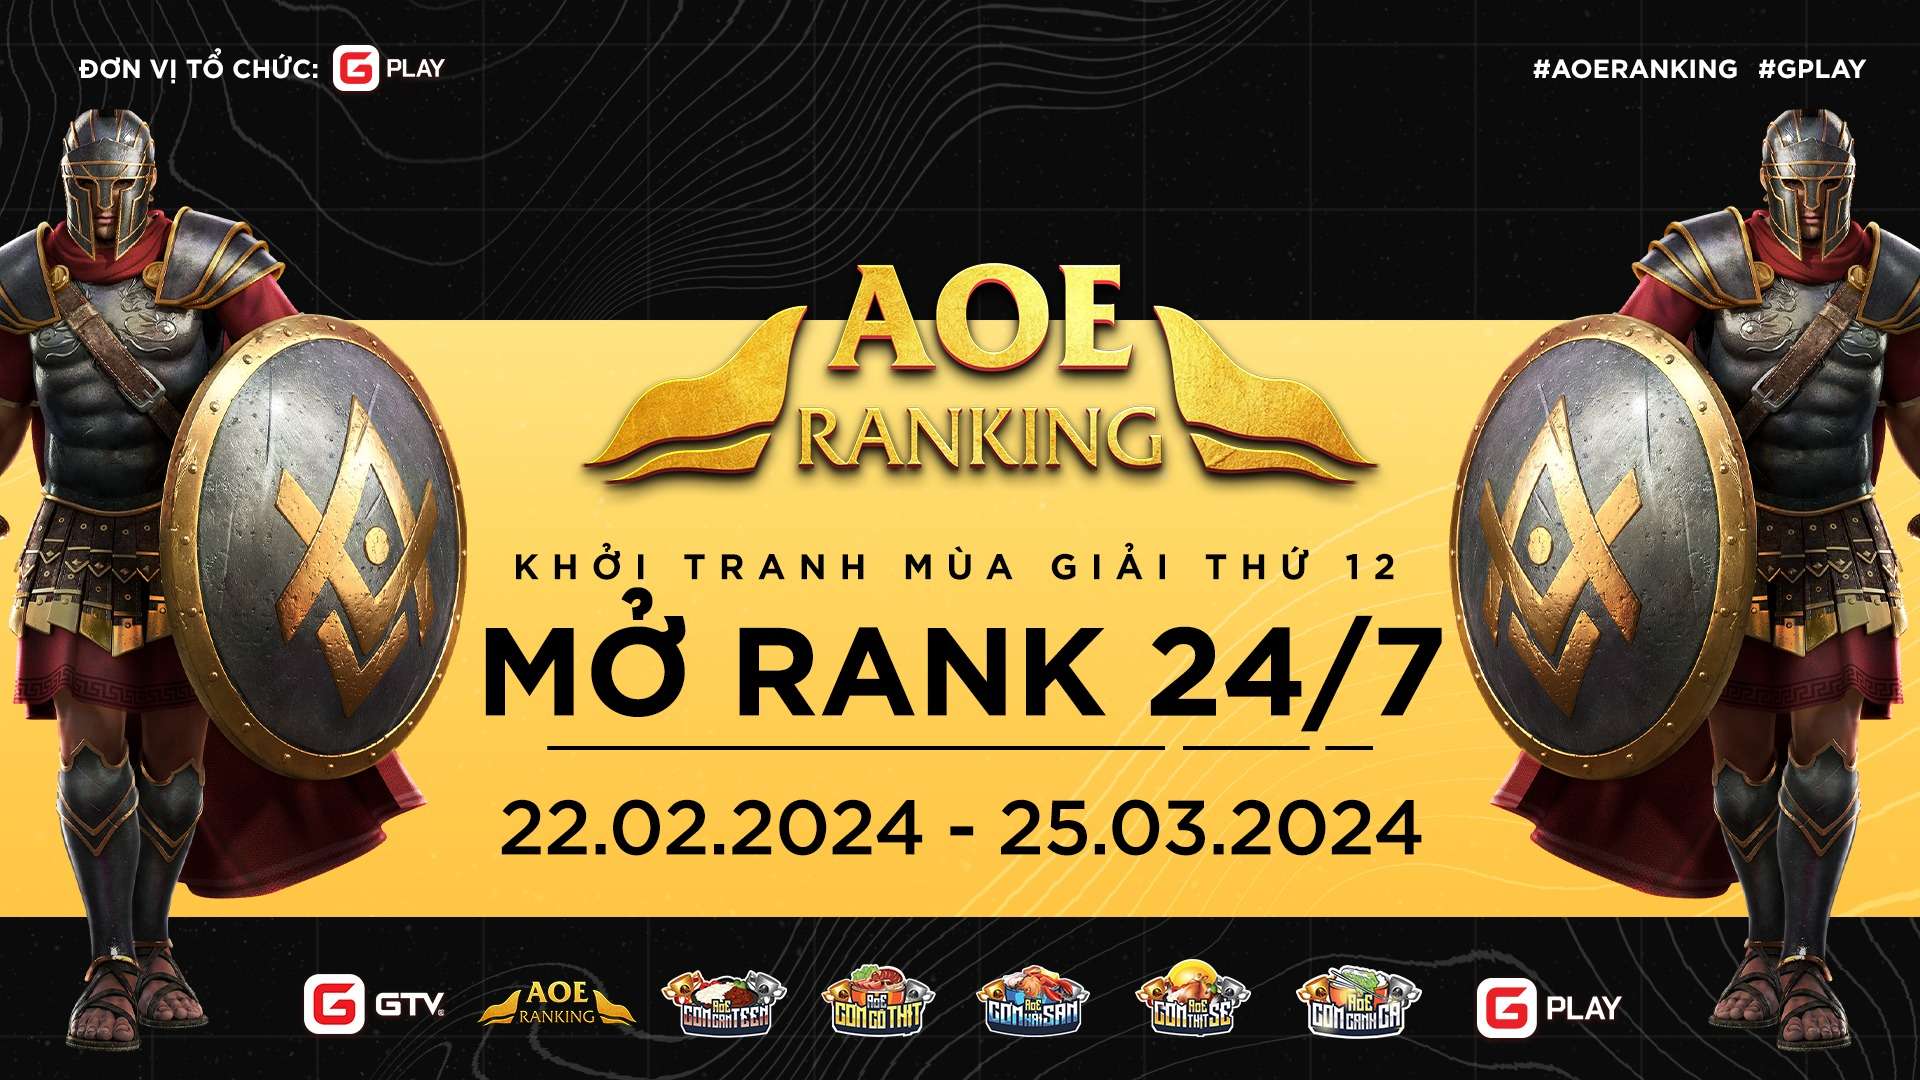 KHỞI TRANH MÙA GIẢI THỨ 12: AoE Ranking mở 24/7 - Không giới hạn số trận - 1 click là chơi